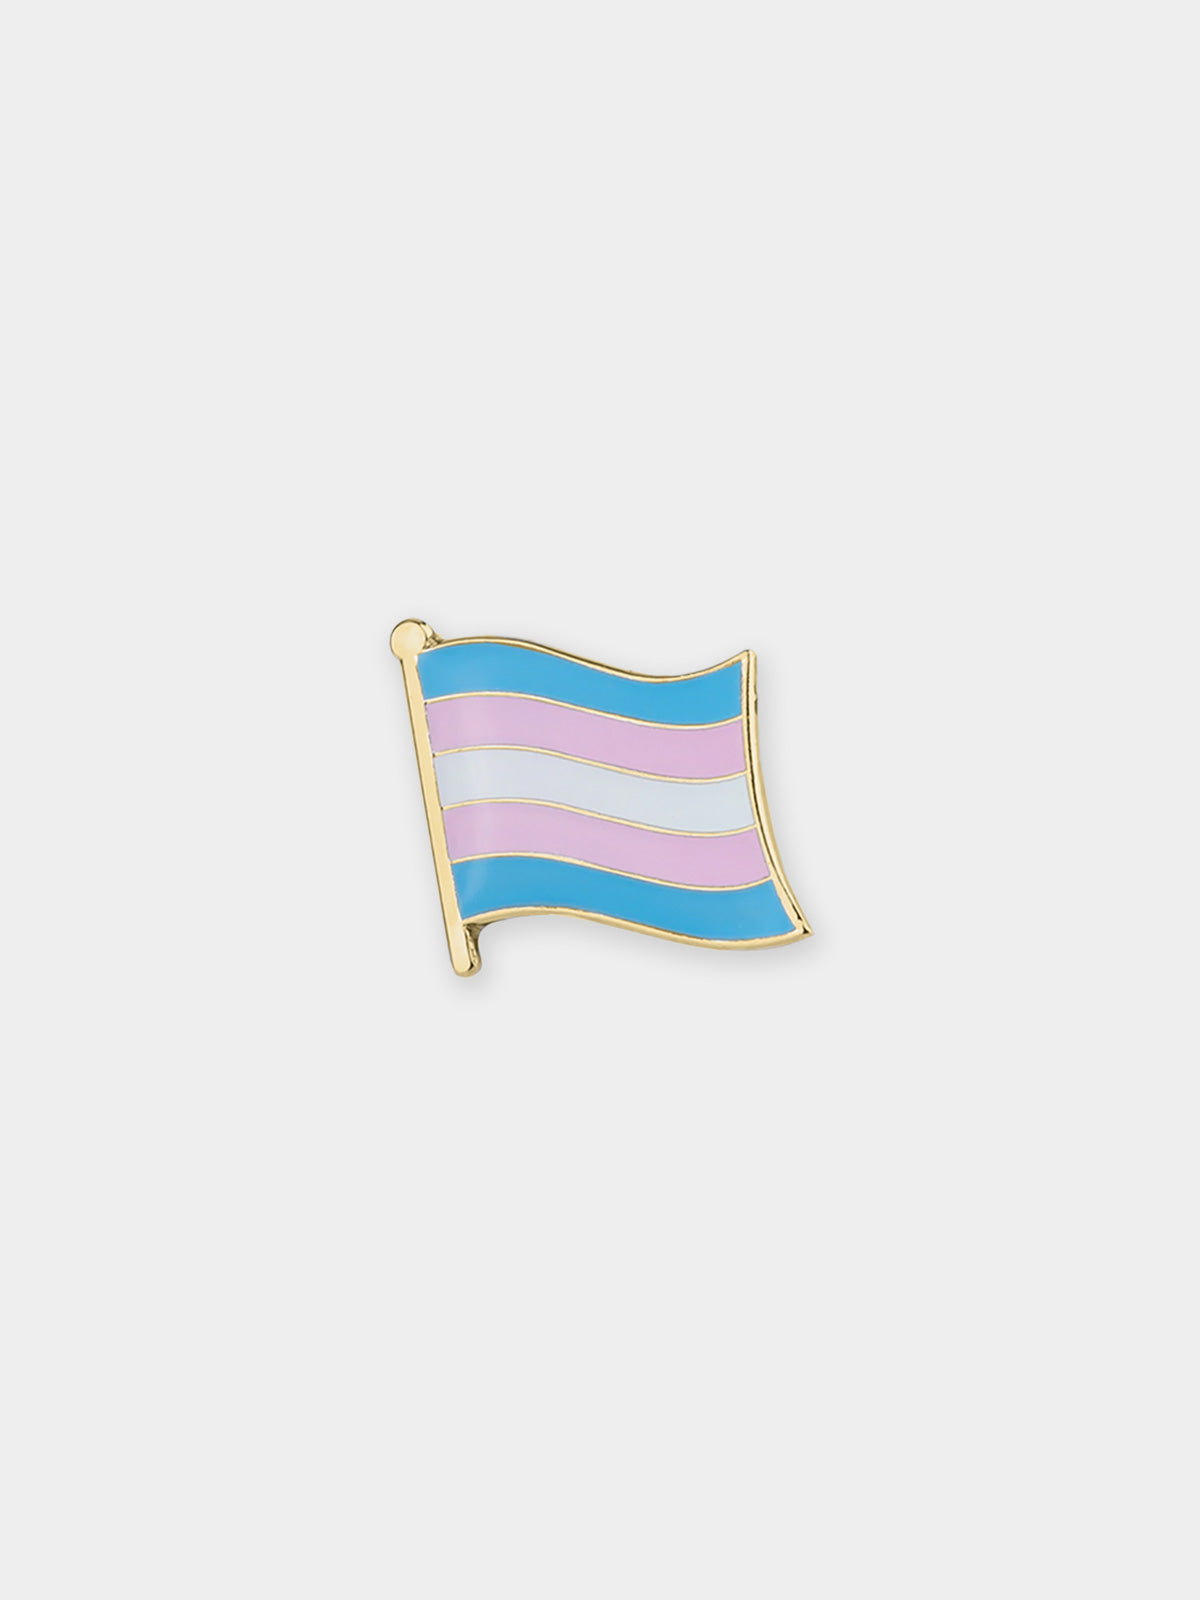 Rainbow Flag Pin